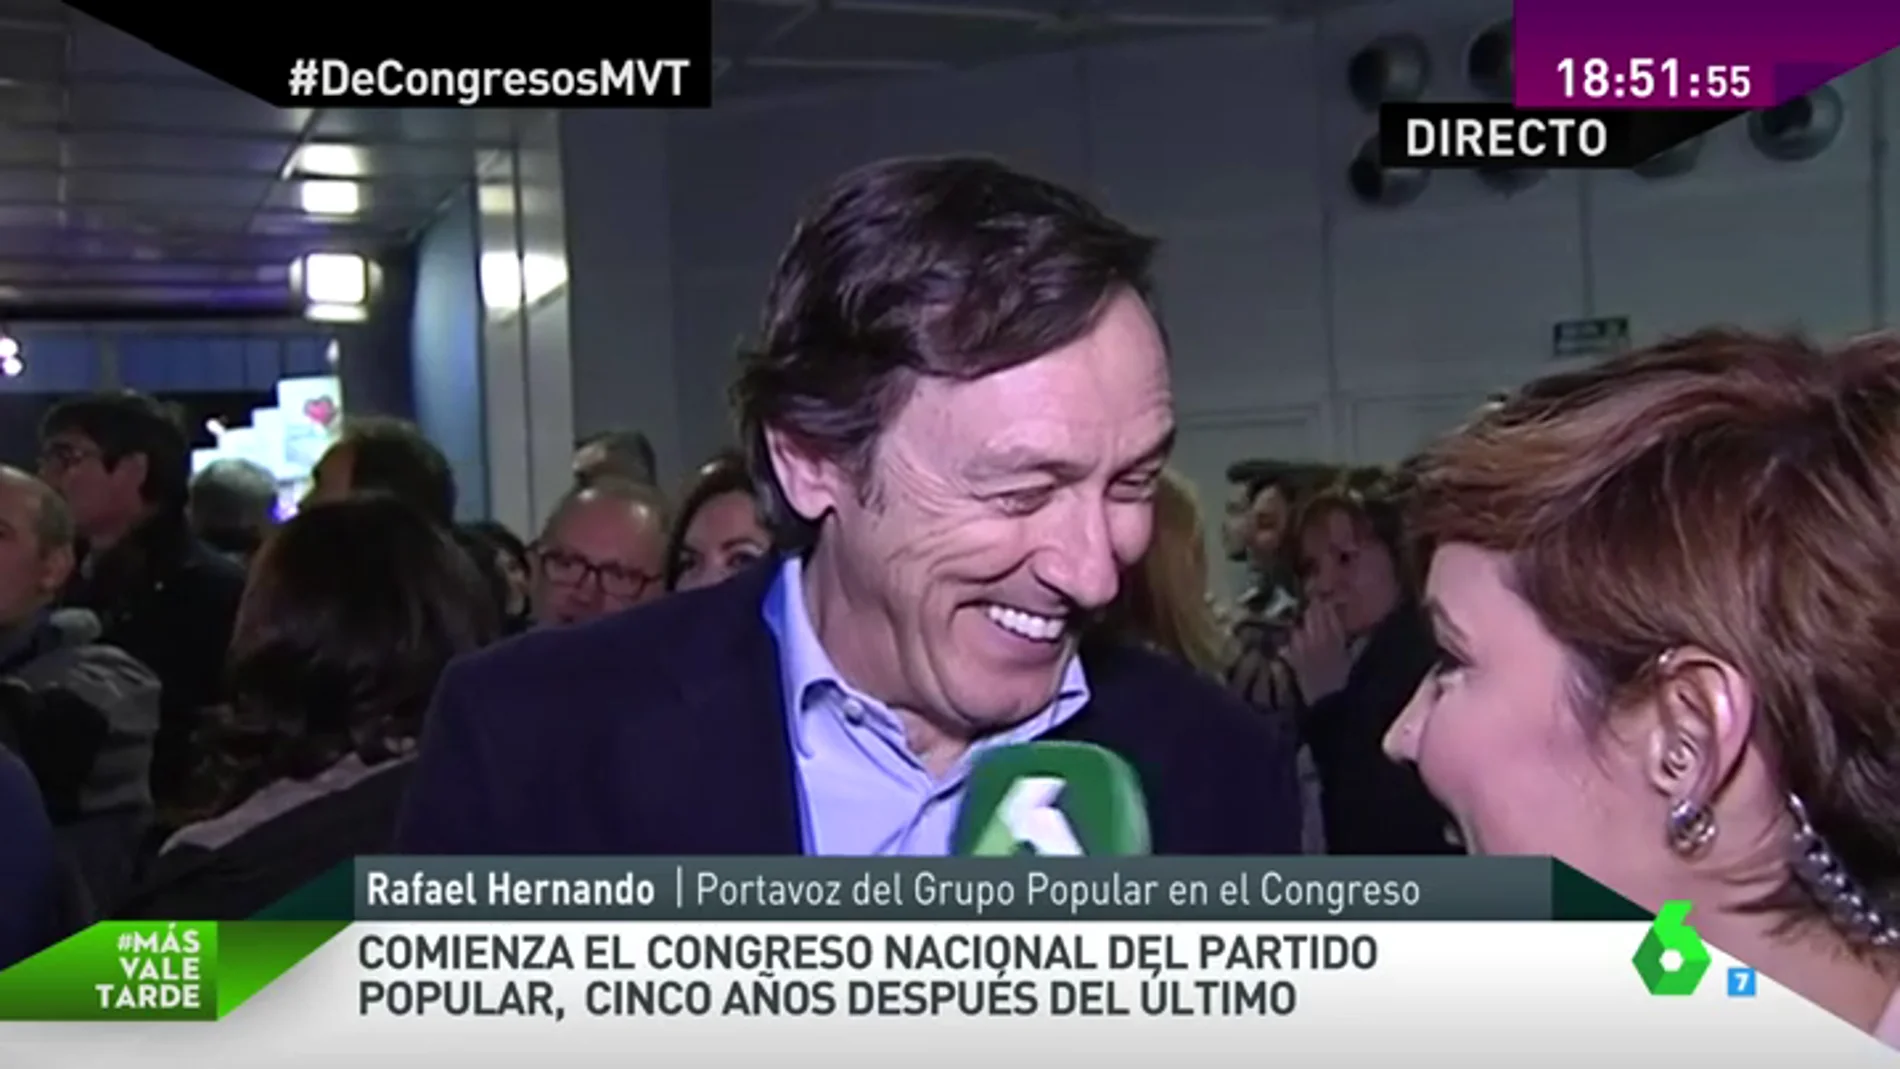 Frame 44.481125 de: Rafael Hernando: "Me preocupa Errejón, creo que seguirá en el partido pero los comunistas son como son"